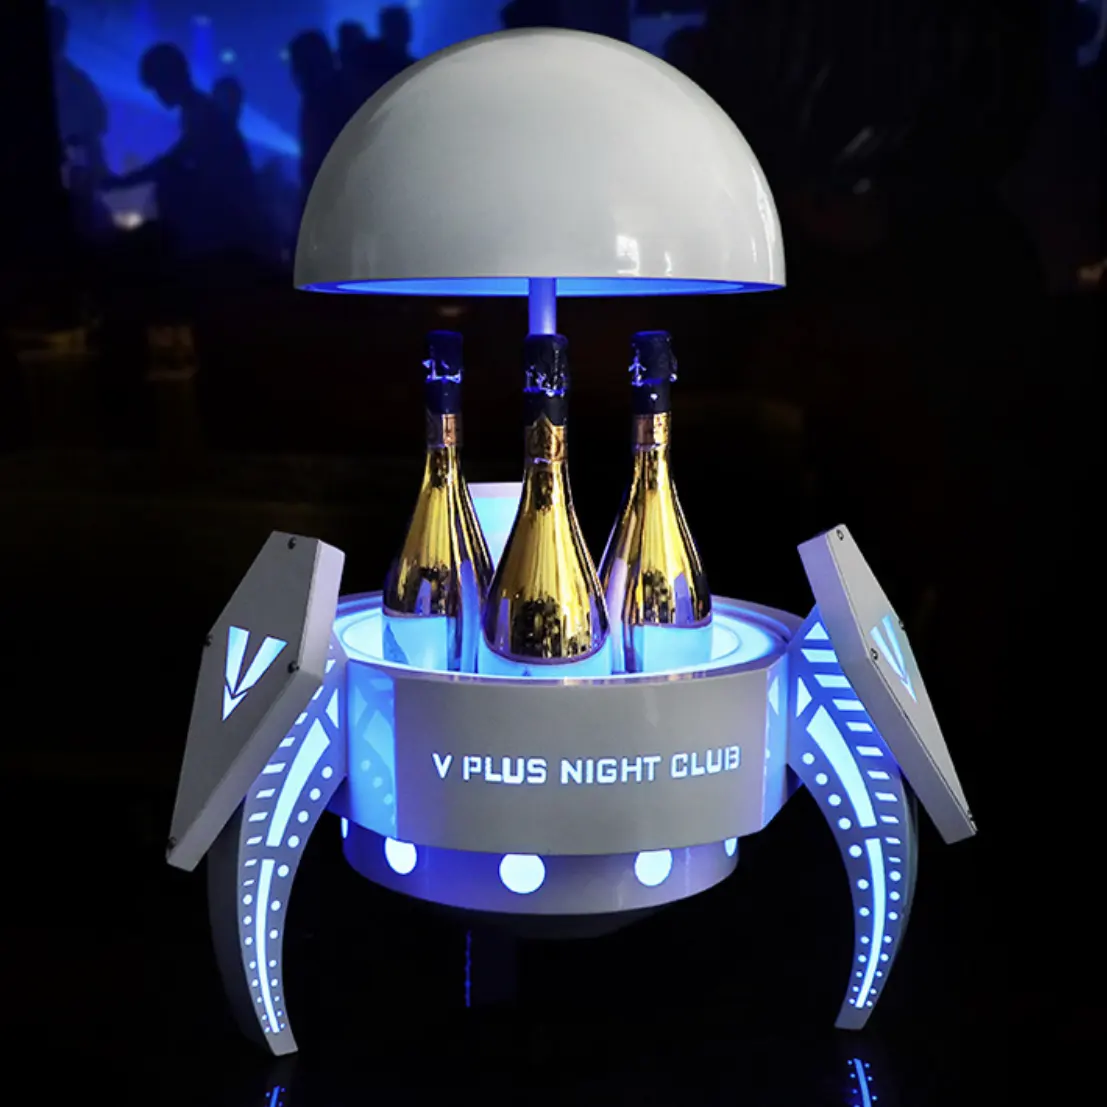 New Auto-Lifting LED Garrafa Apresentador Ball-Shaped Whisky Cocktail Display Racks para Night Club Lounge LED Glória Baldes de Gelo